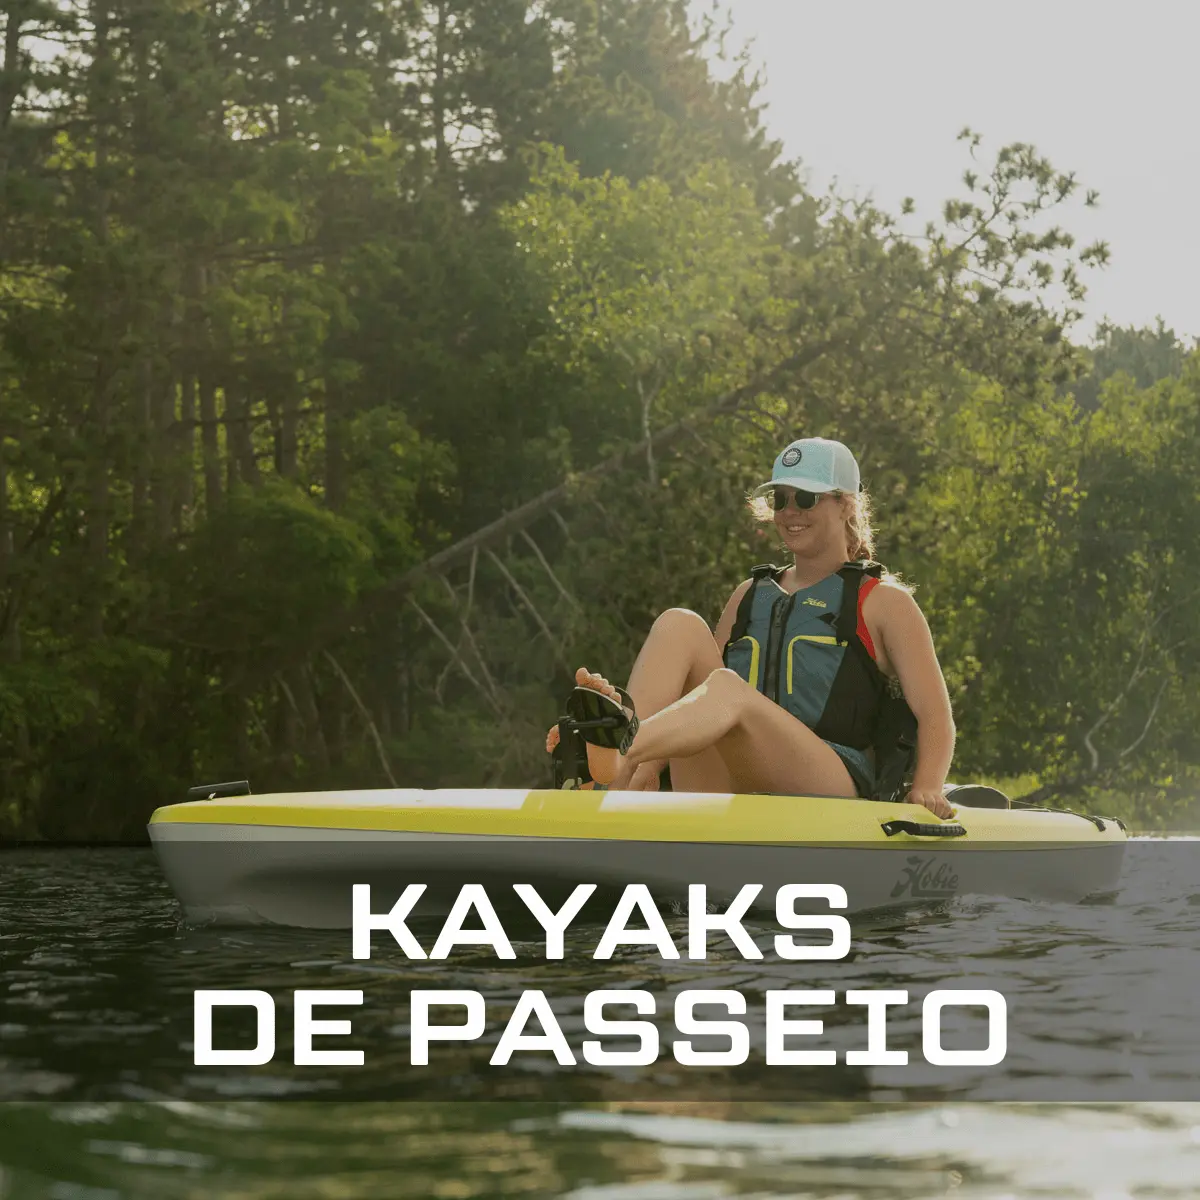 Kayaks de passeio